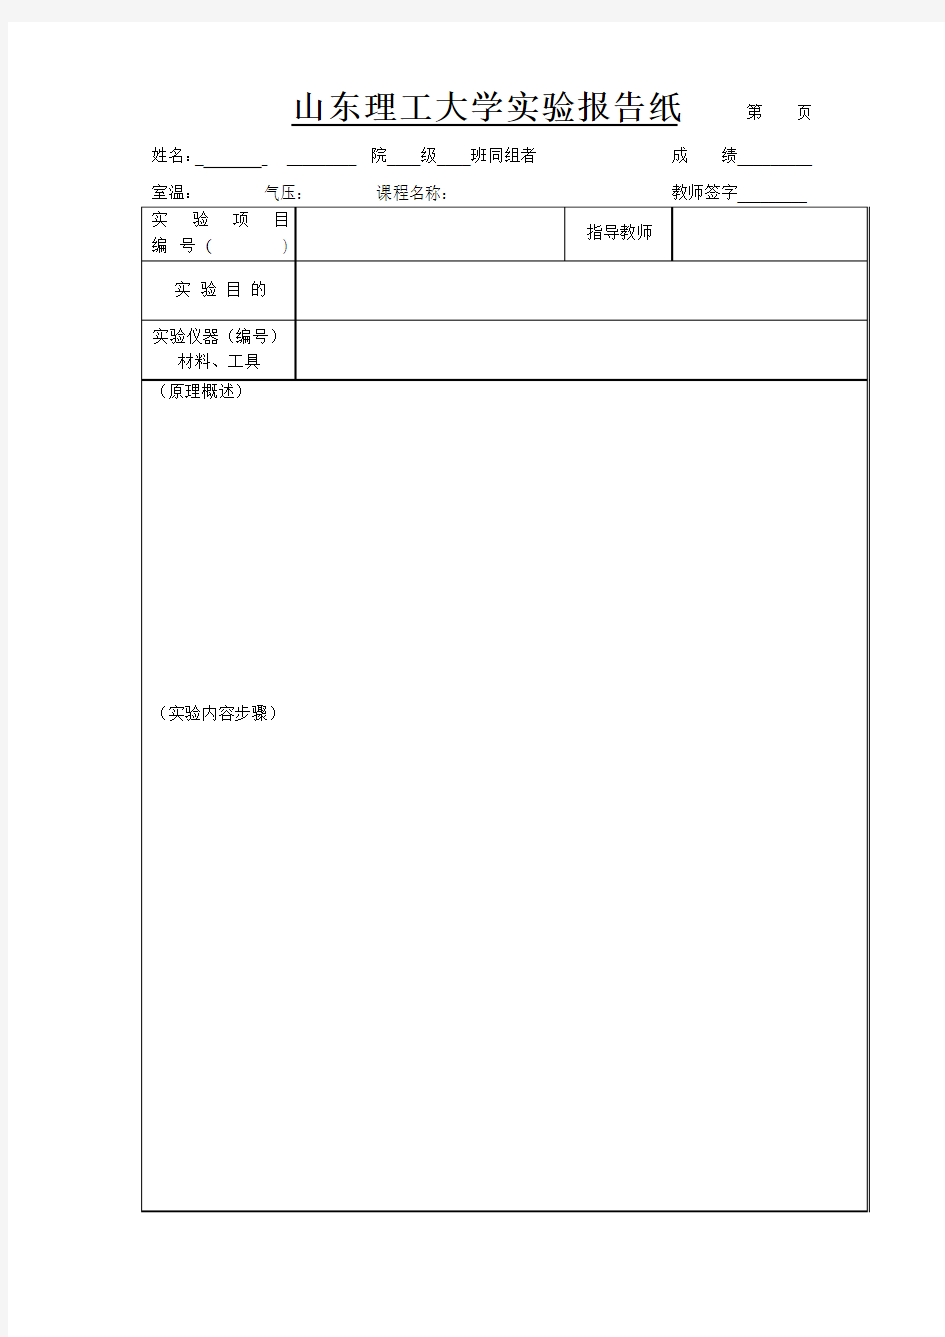 山东理工大学实验报告纸(最新版)